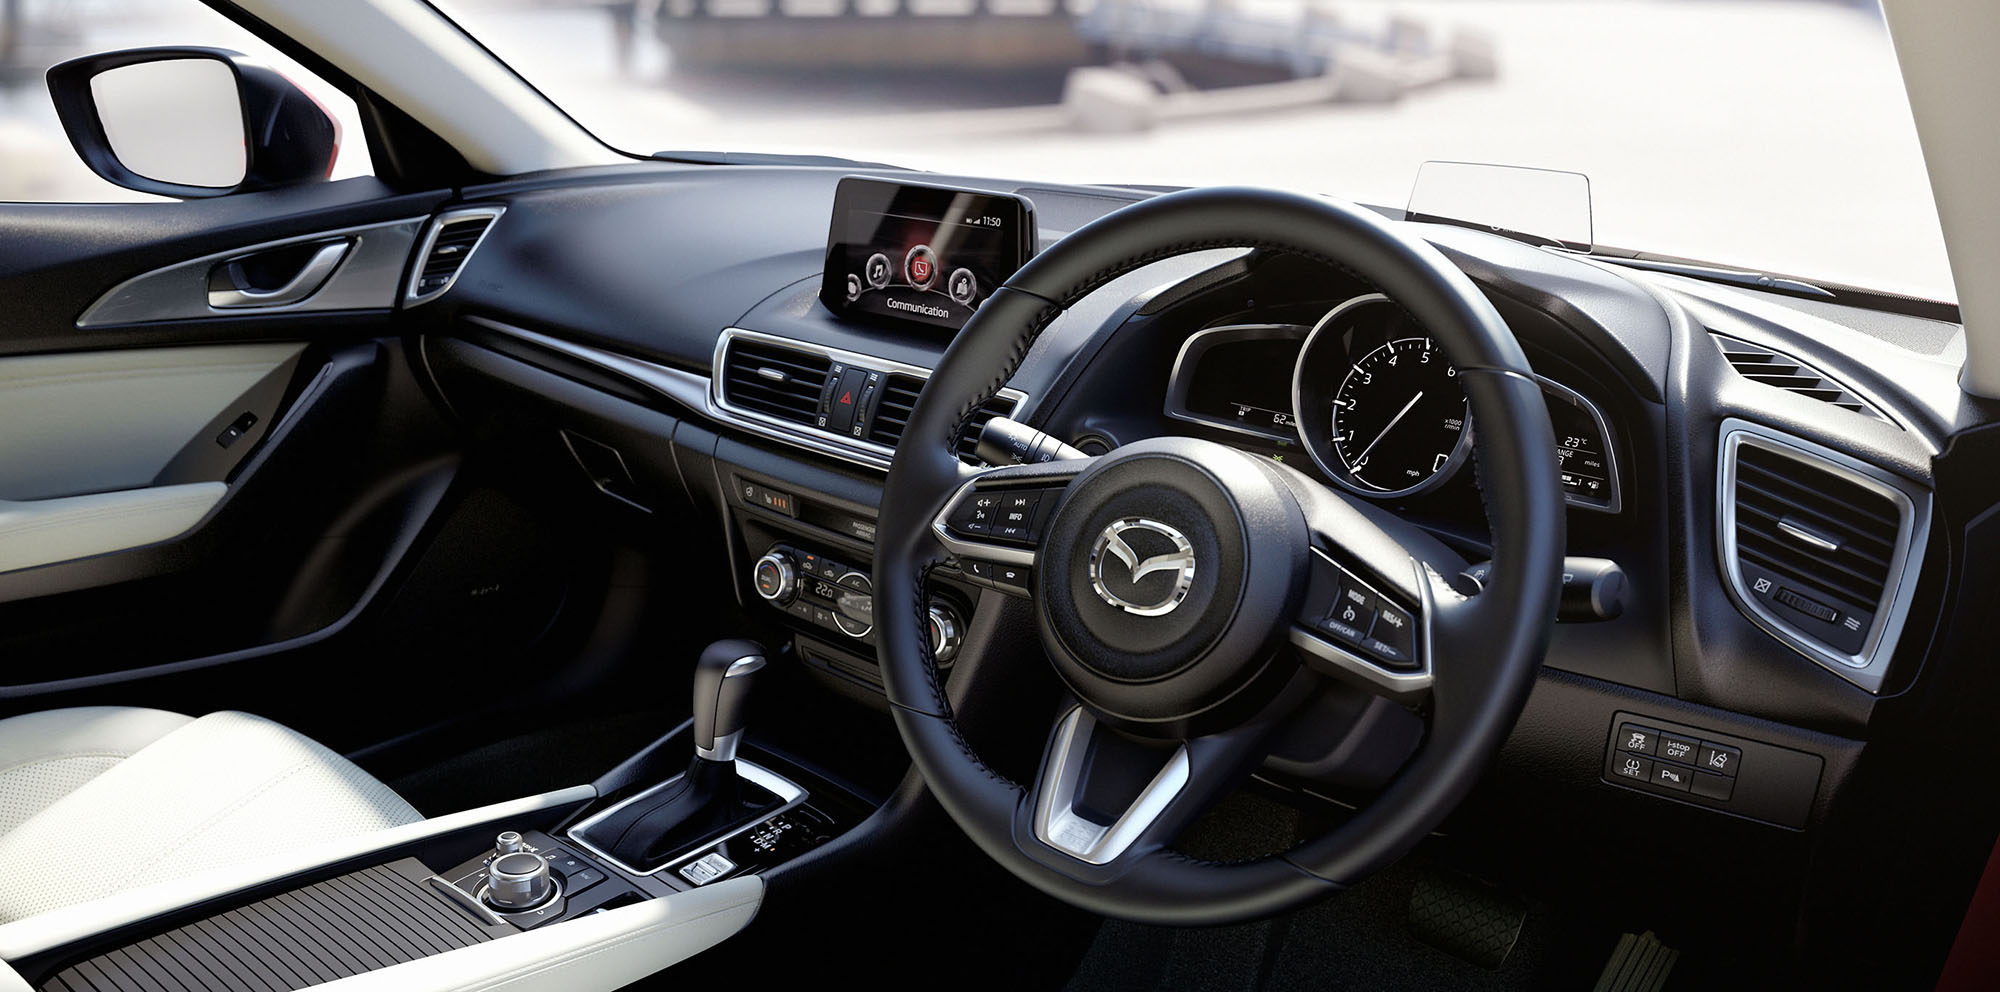 Ngoài ra ở thiết bị an toàn, Mazda lần đầu tiên giới thiệu hệ thống G-Vectoring Control - một công nghệ mới hỗ trợ an toàn giúp người lái kiểm soát xe tốt hơn bằng cách giảm lực kéo động cơ khi vào cua bằng cách thay đổi thời điểm đánh lửa.